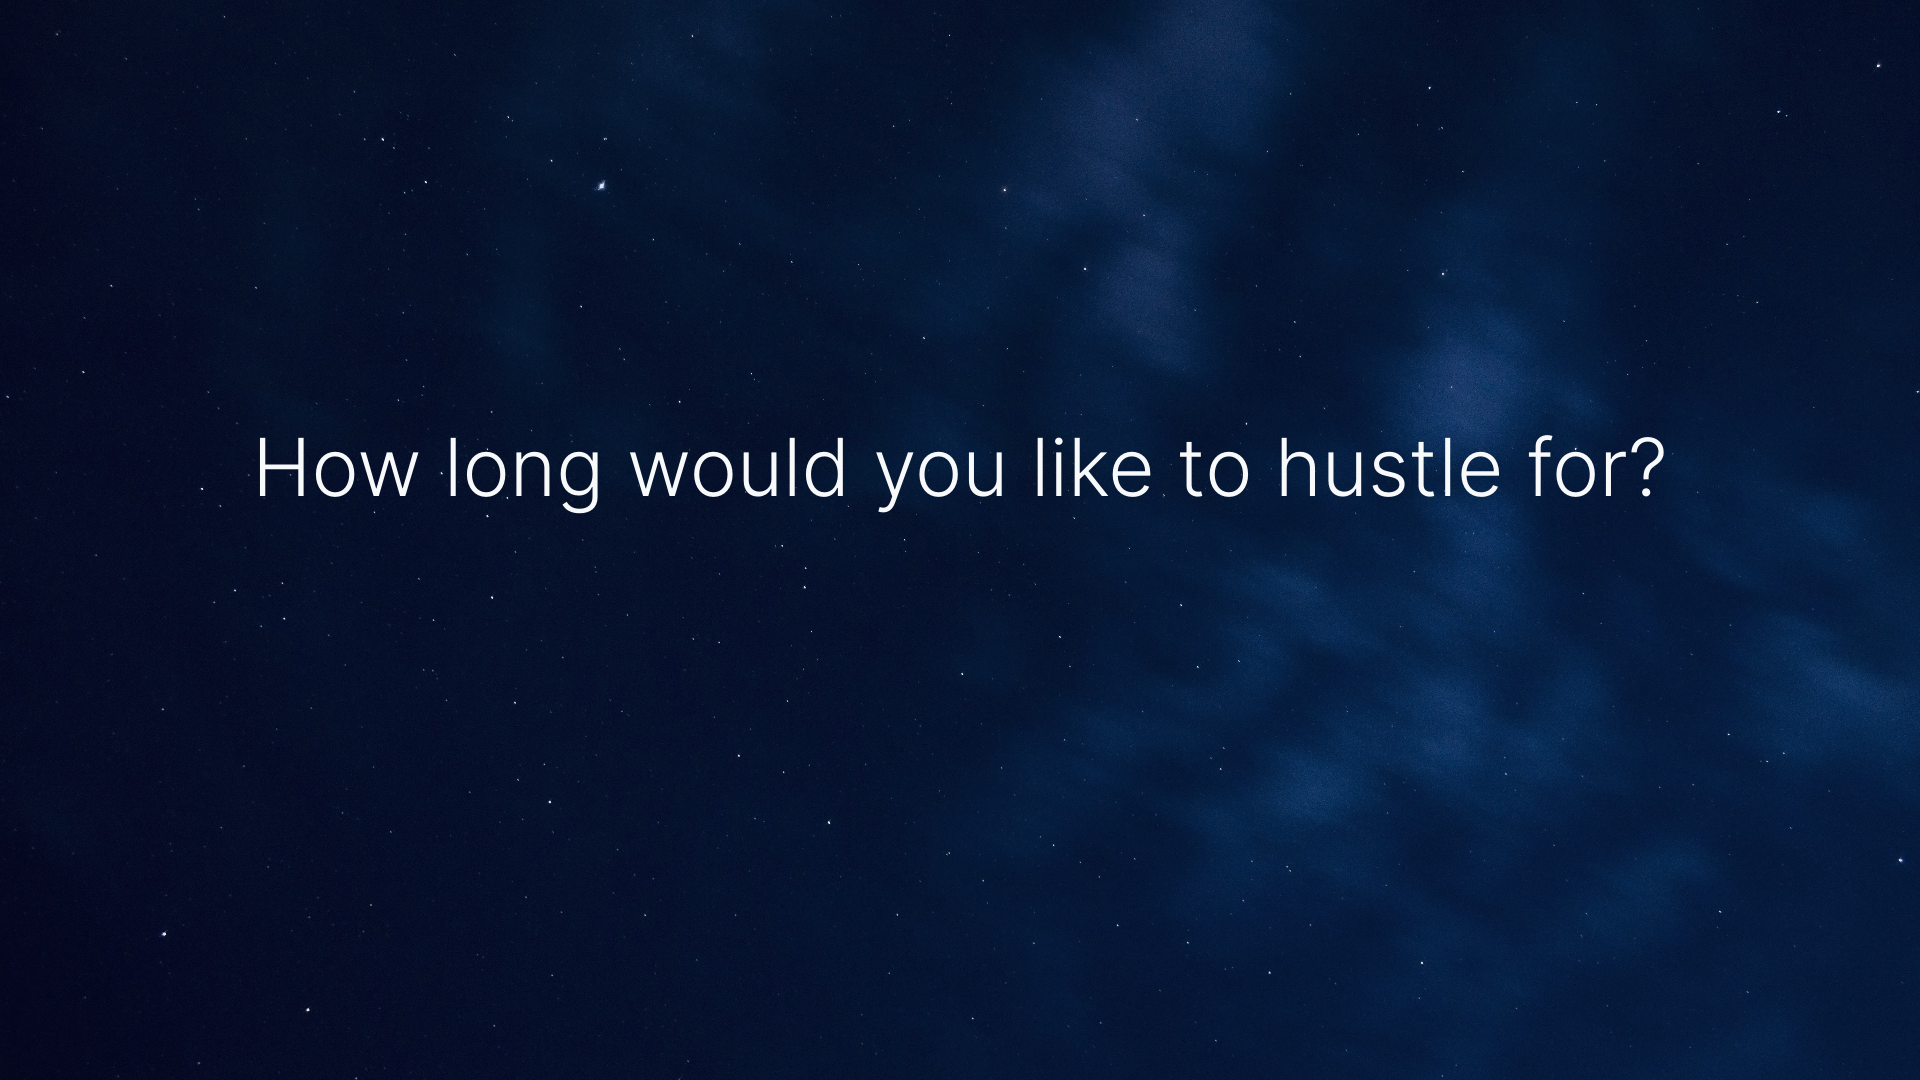 Hustle Timer